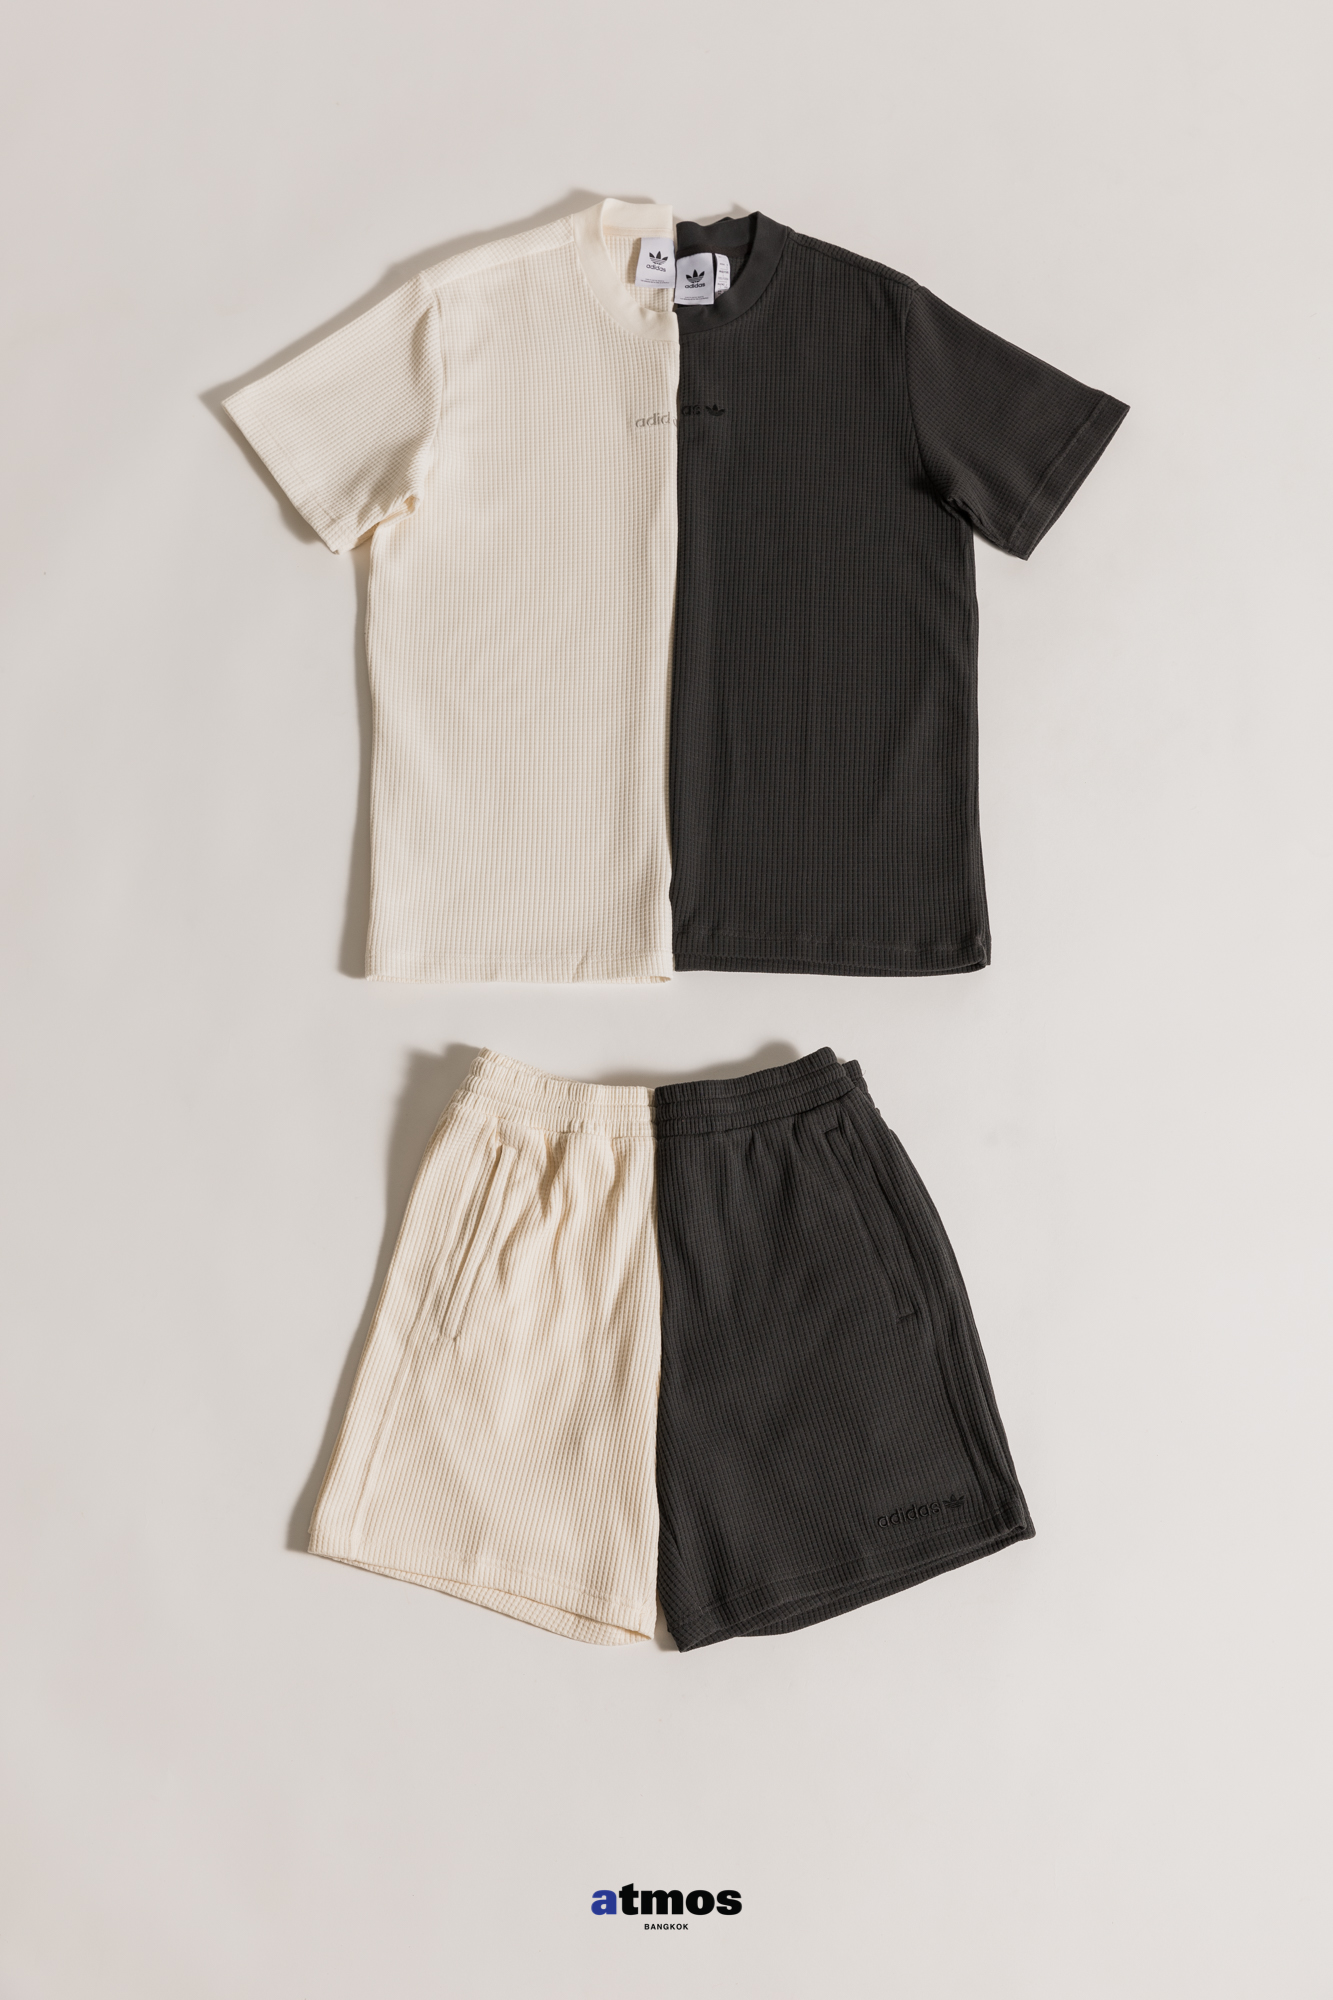 ADIDAS WAFFLE เสื้อผ้าที่จัดเต็มทุกสัมผัสกับผ้าถักลายวาฟเฟิลจาก adidas Original